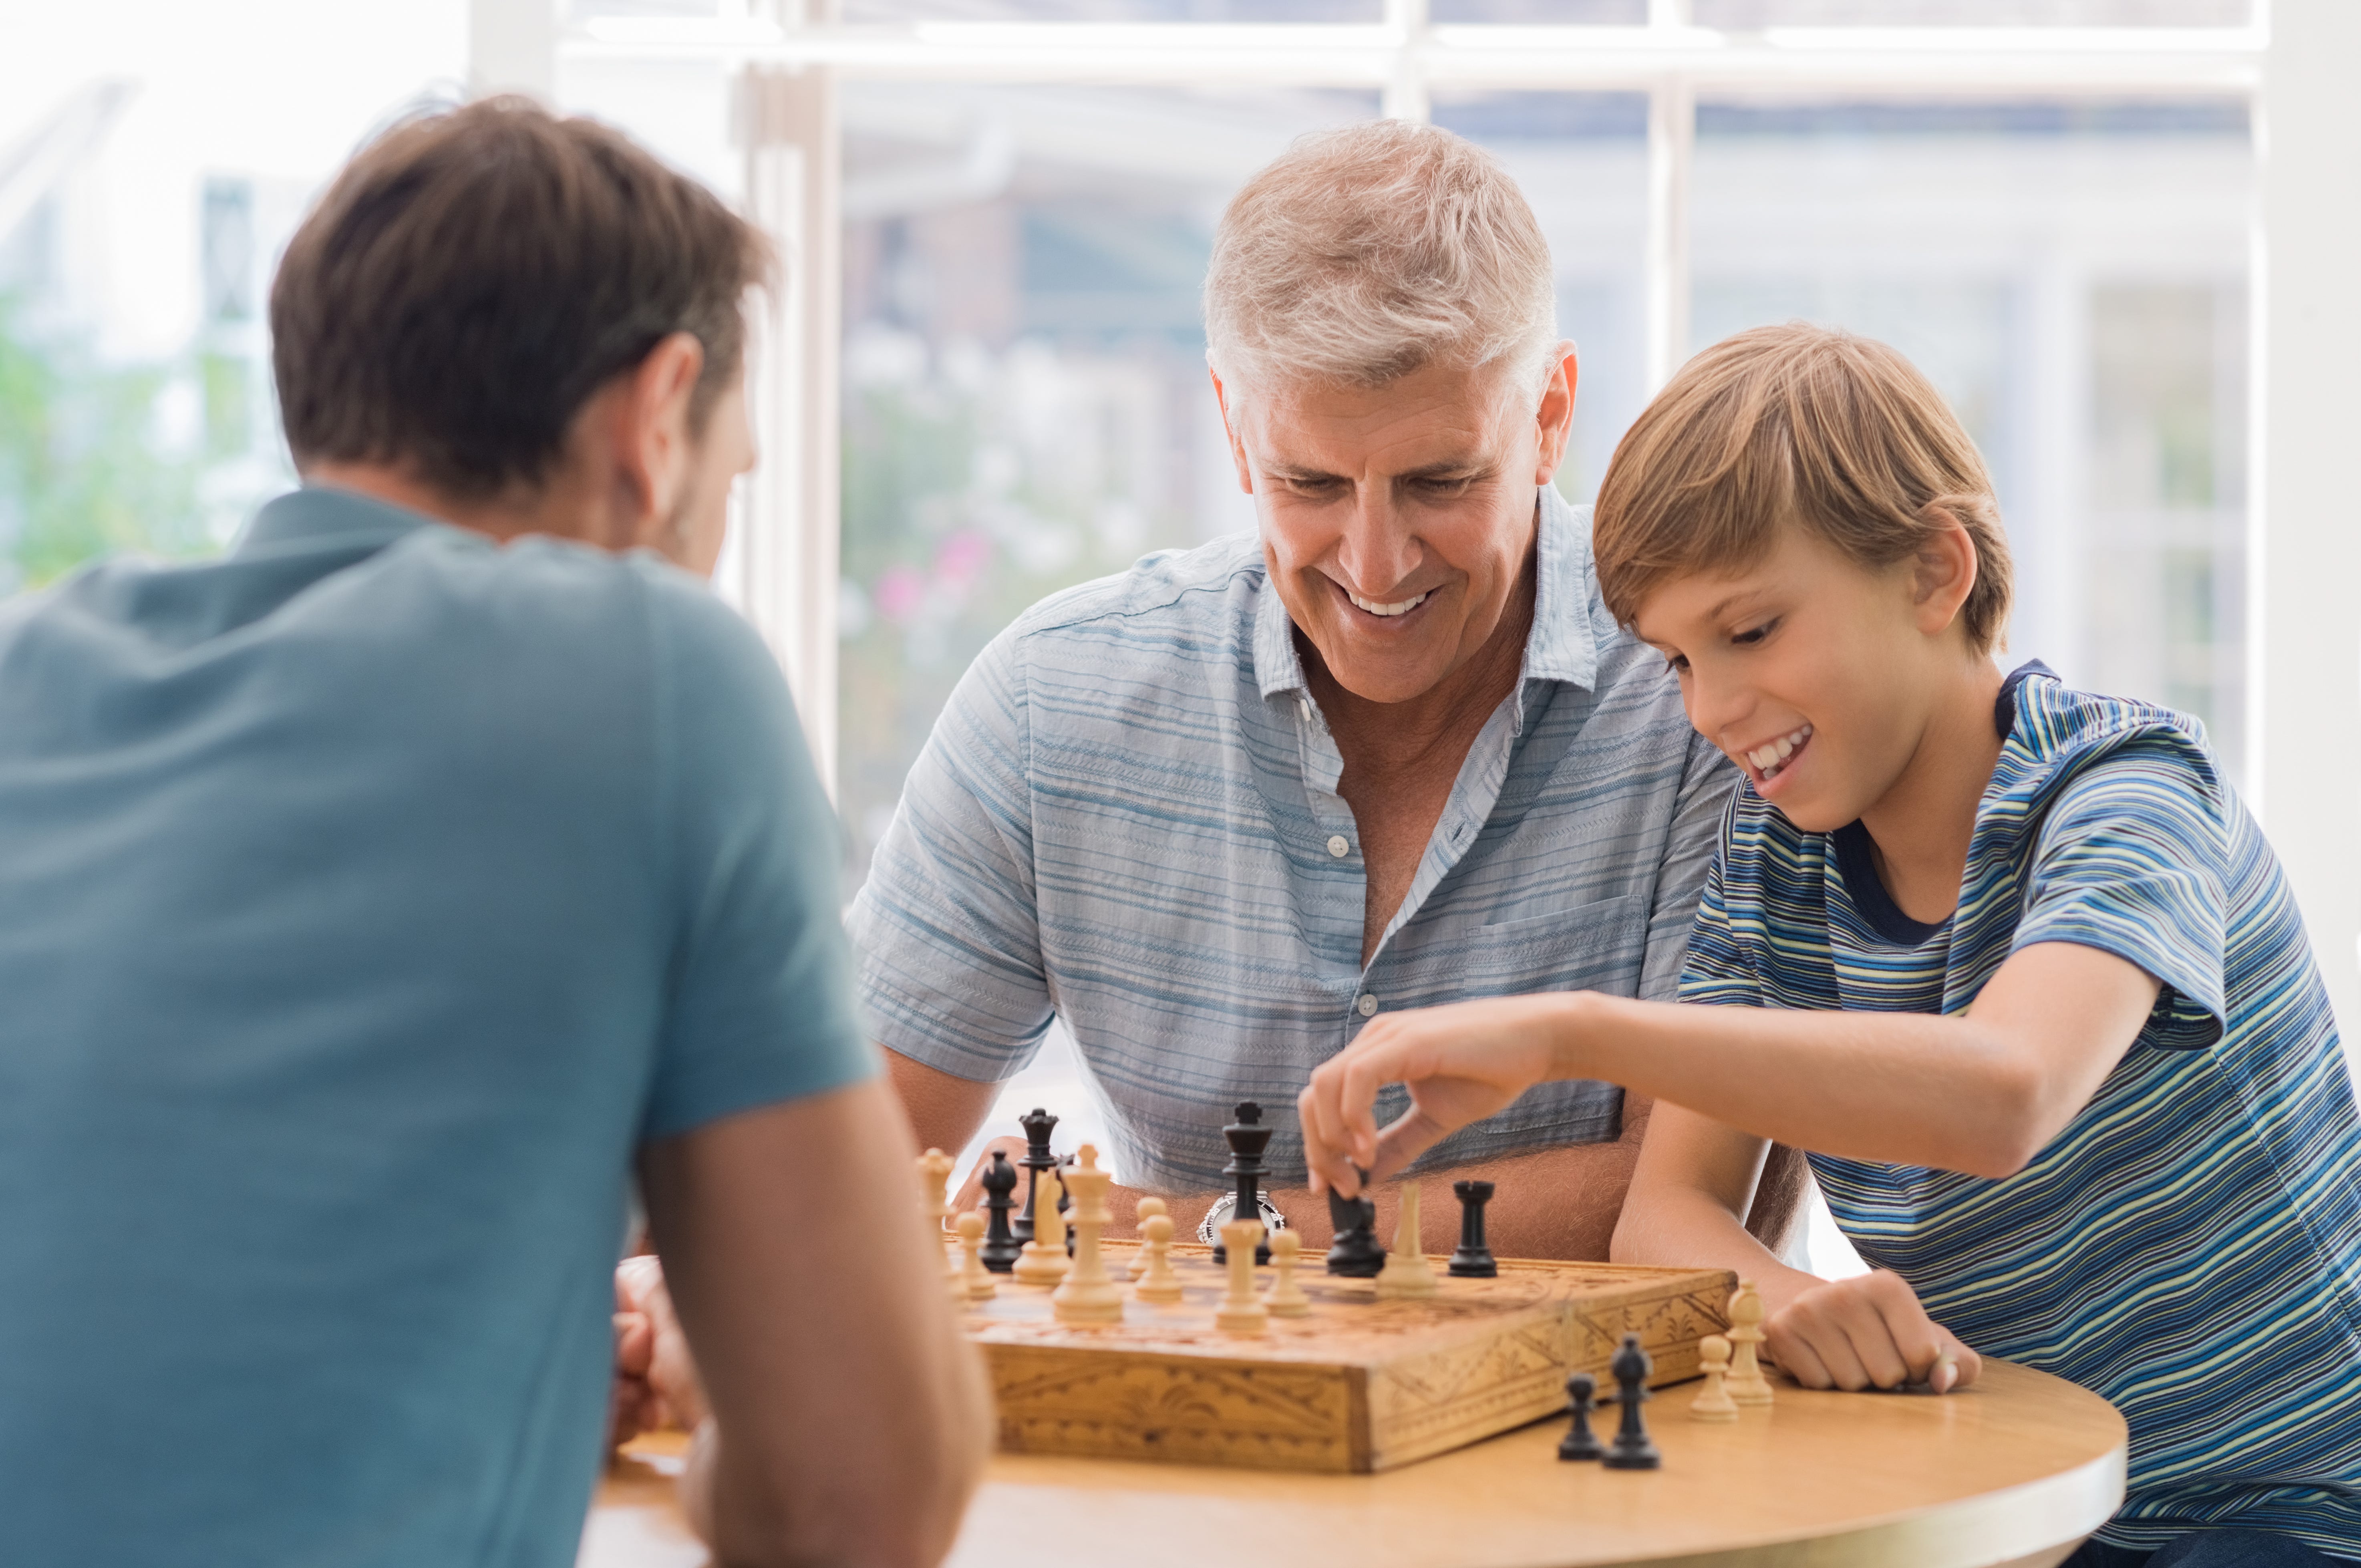 Папа играет в шахматы. Люди играющие в настольные игры. Шахматы для детей. Шахматы семья. Дети играющие в настольные игры.